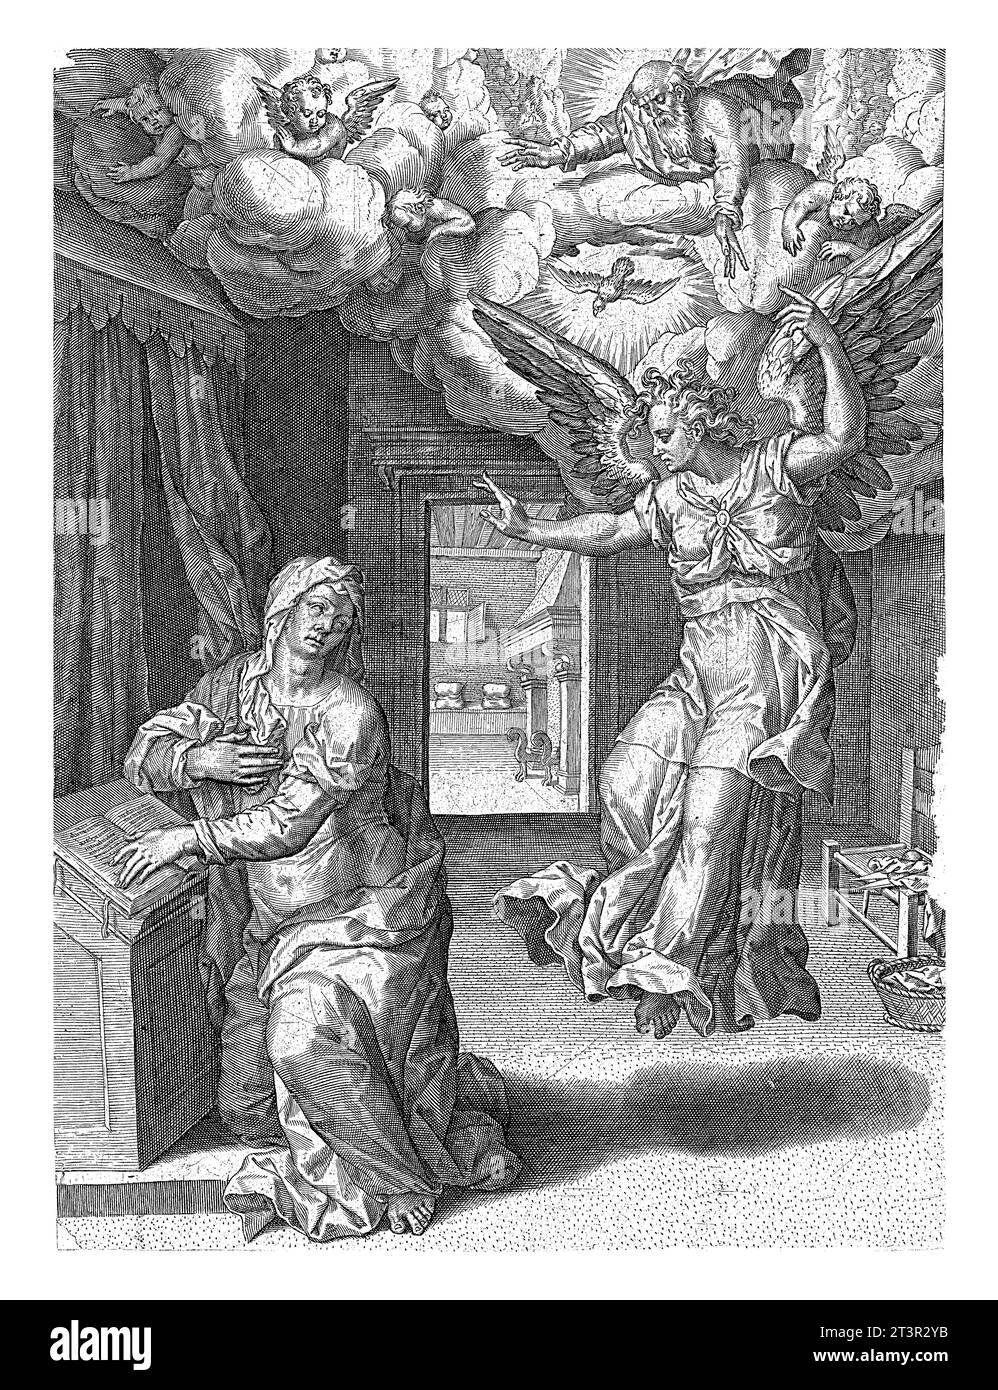 Annonciation de la naissance du Christ à Marie, Pieter Jalhea Furnius, 1550 - 1625 l'ange Gabriel apparaît à Marie alors qu'elle lit à un pupitre dans une pièce. Banque D'Images